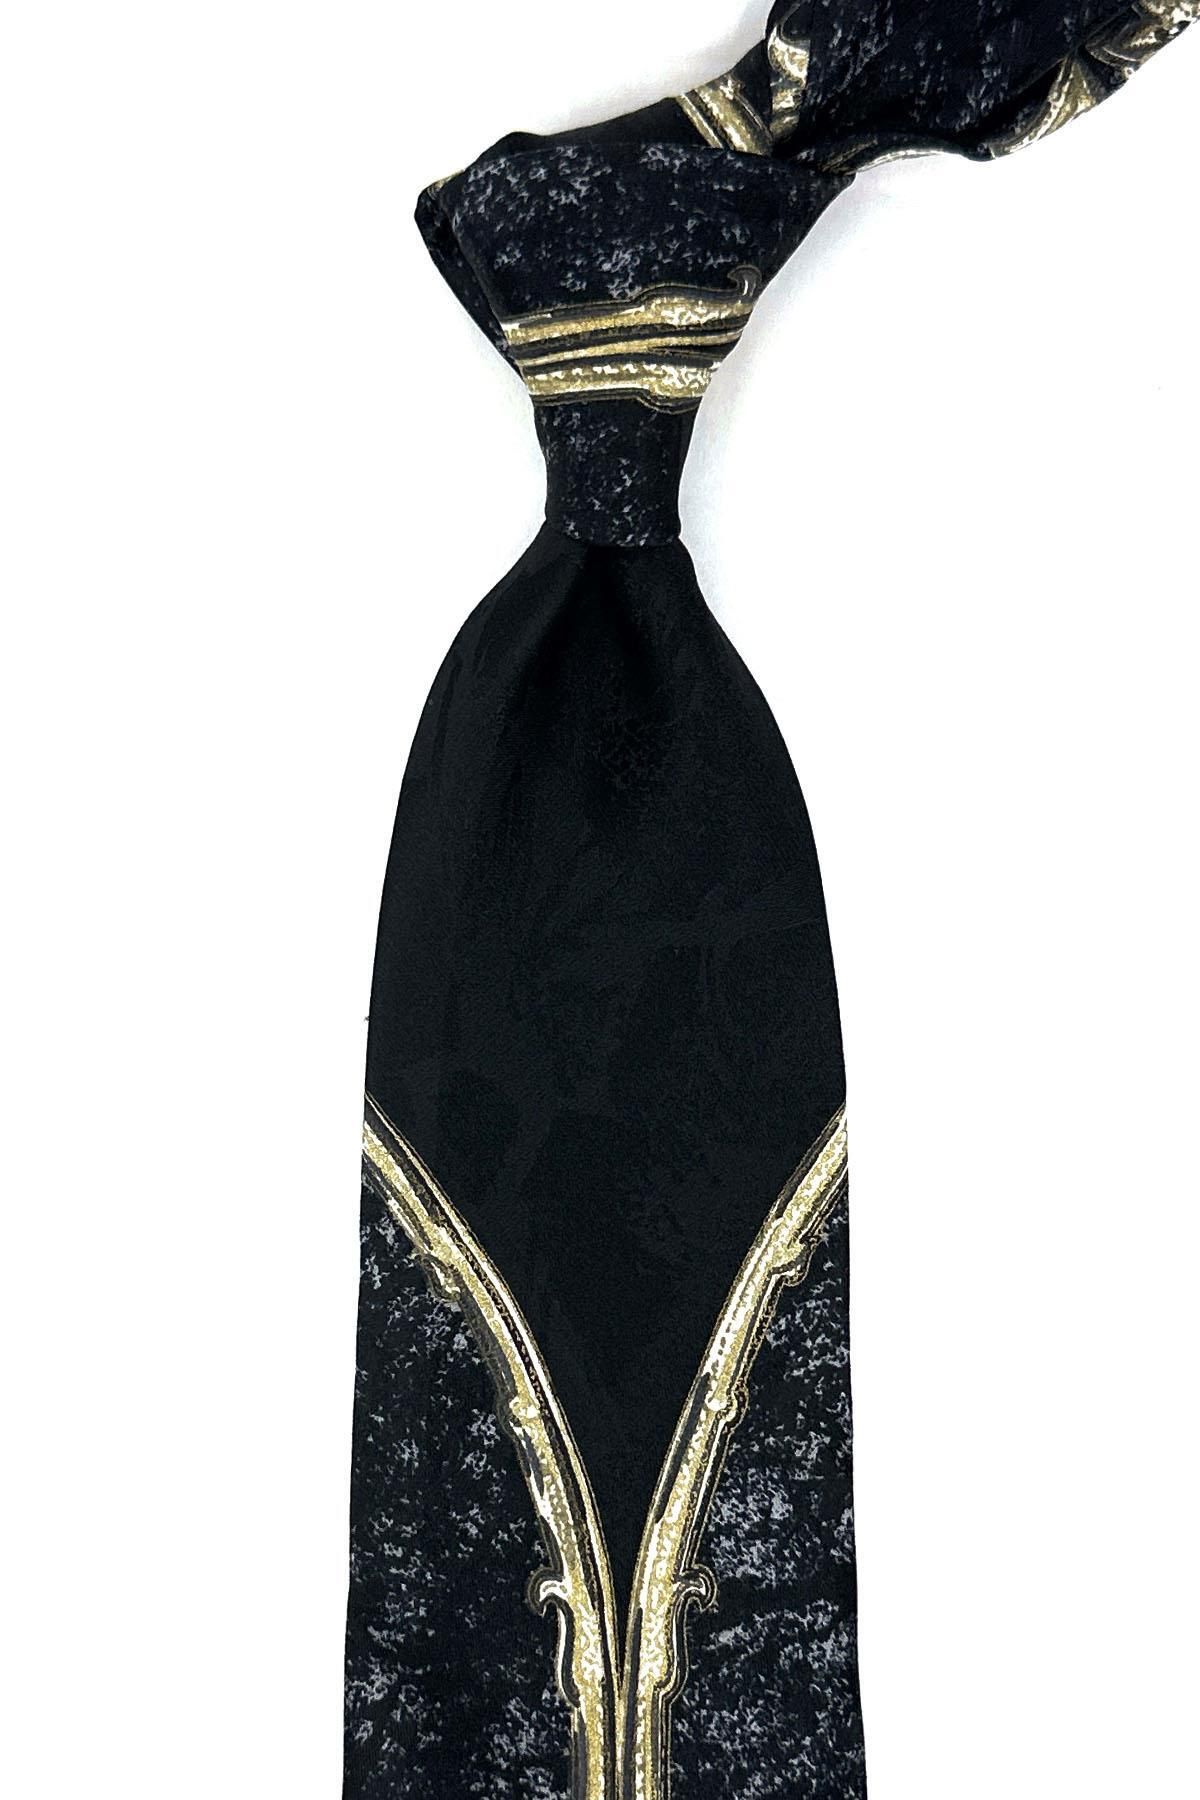 Kravatkolik Siyah - Füme Motif Desen İtalyan İpek Kravat İK1456